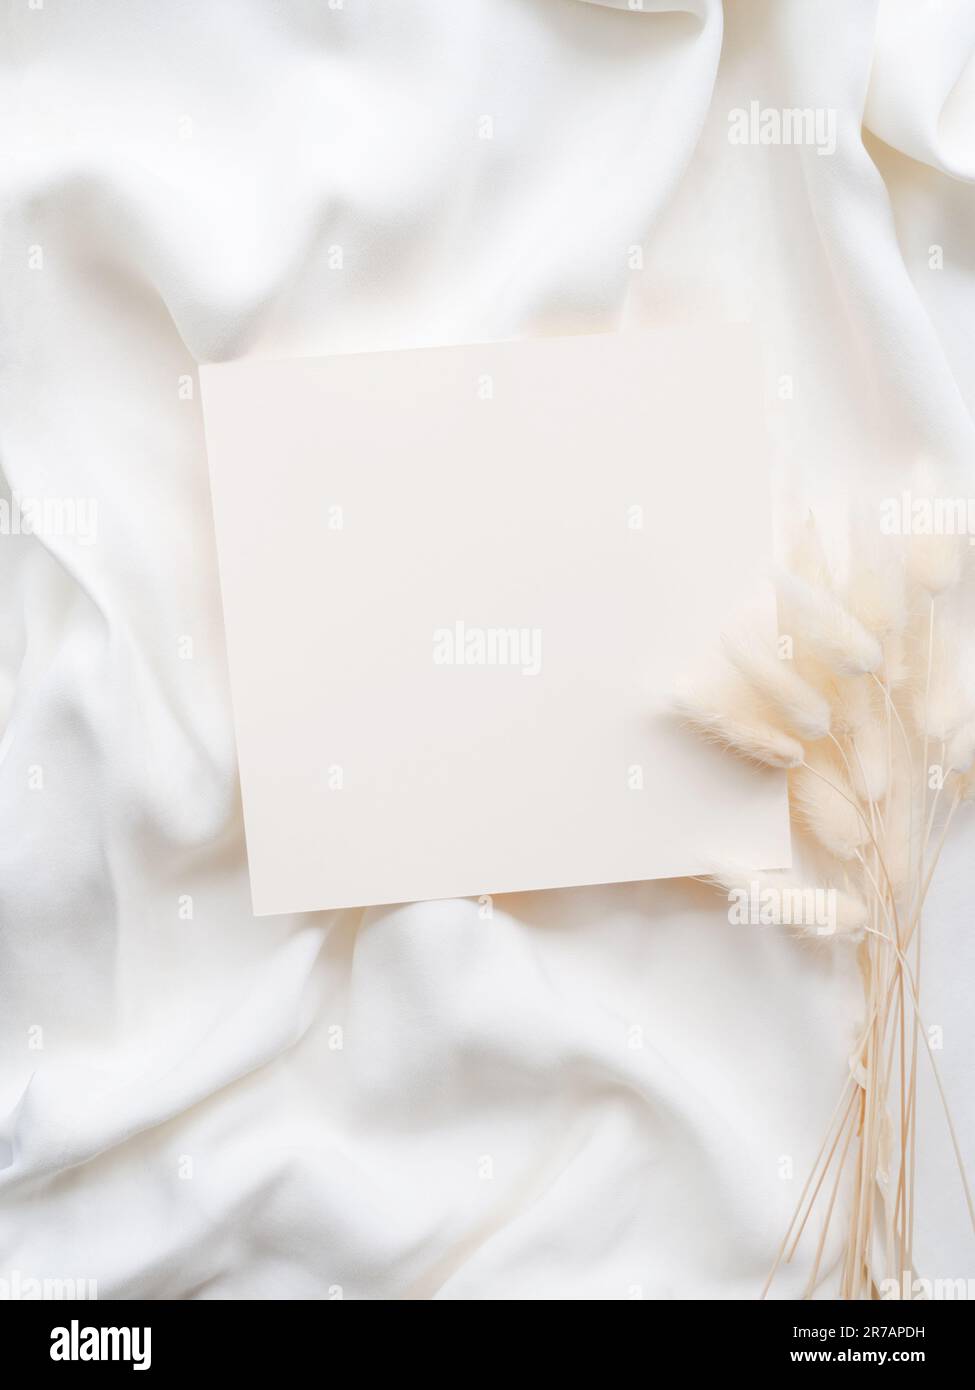 Maquette de feuille de papier blanc vierge, enveloppe et branche florale sèche sur fond textile blanc neutre. Modèle d'invitation de mariage esthétique minimaliste Banque D'Images